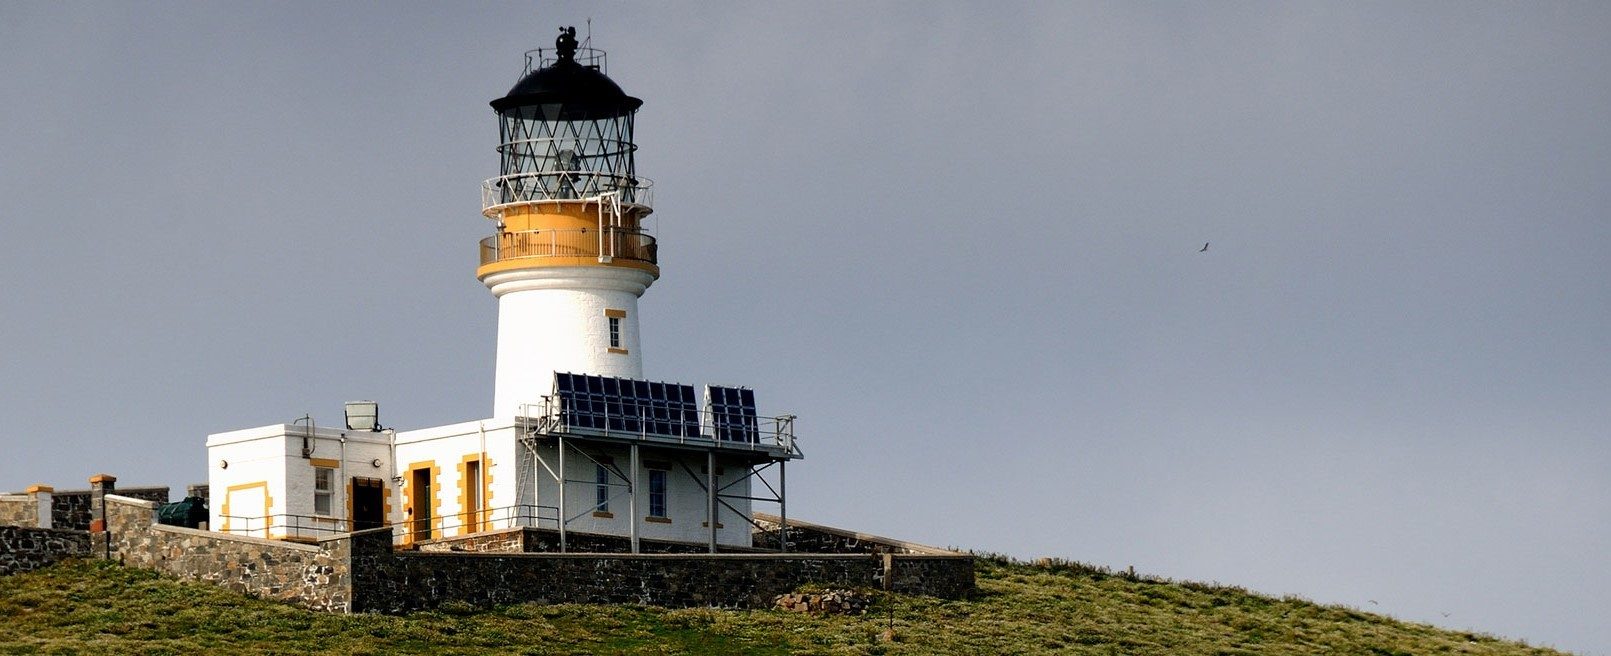 Flannan Isles lighthouse